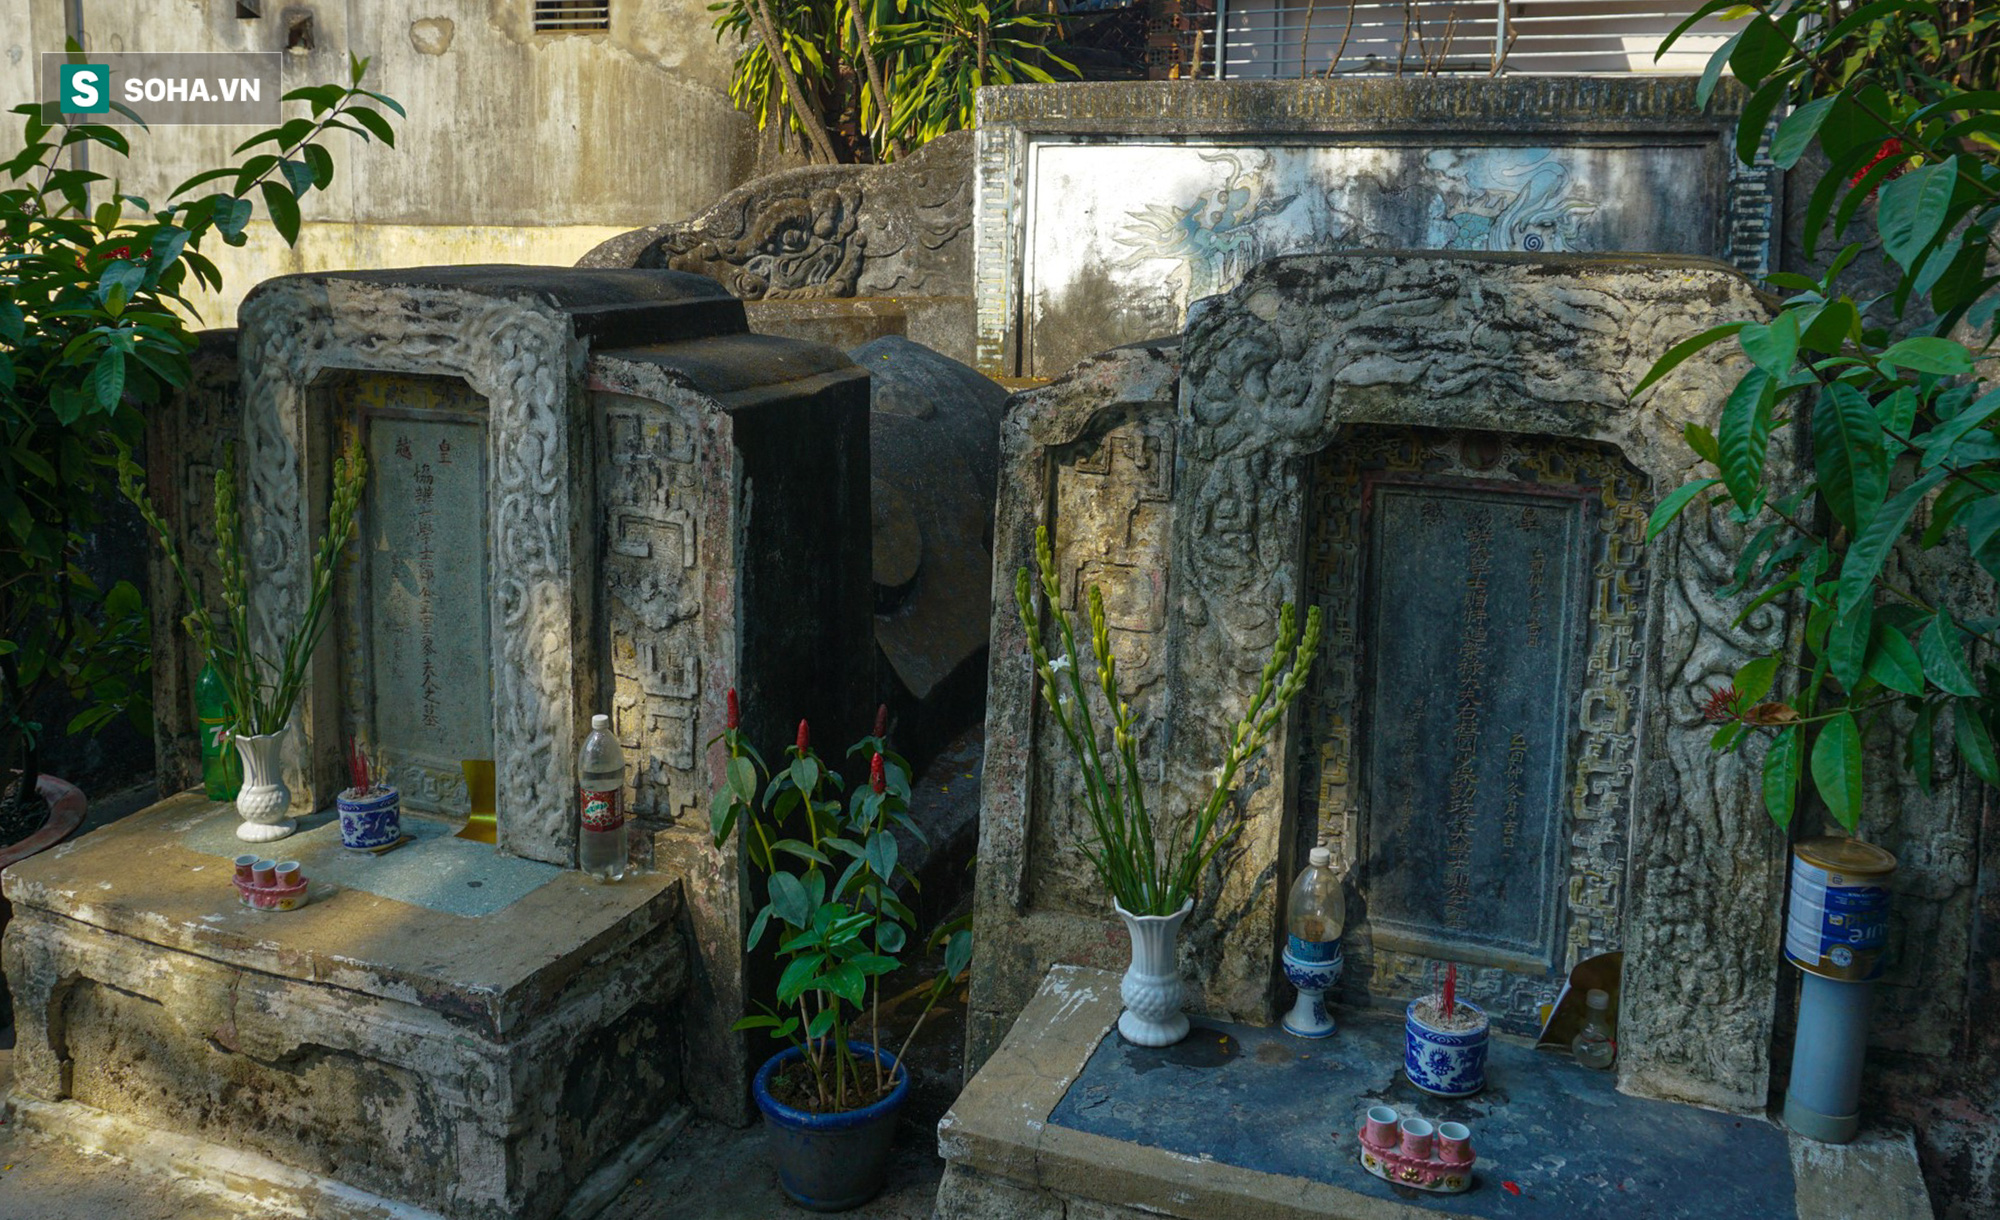 Bí ẩn mộ yểm tại nơi yên nghỉ của người 3 lần từ chối chức bộ trưởng của vua Minh Mạng - Ảnh 2.